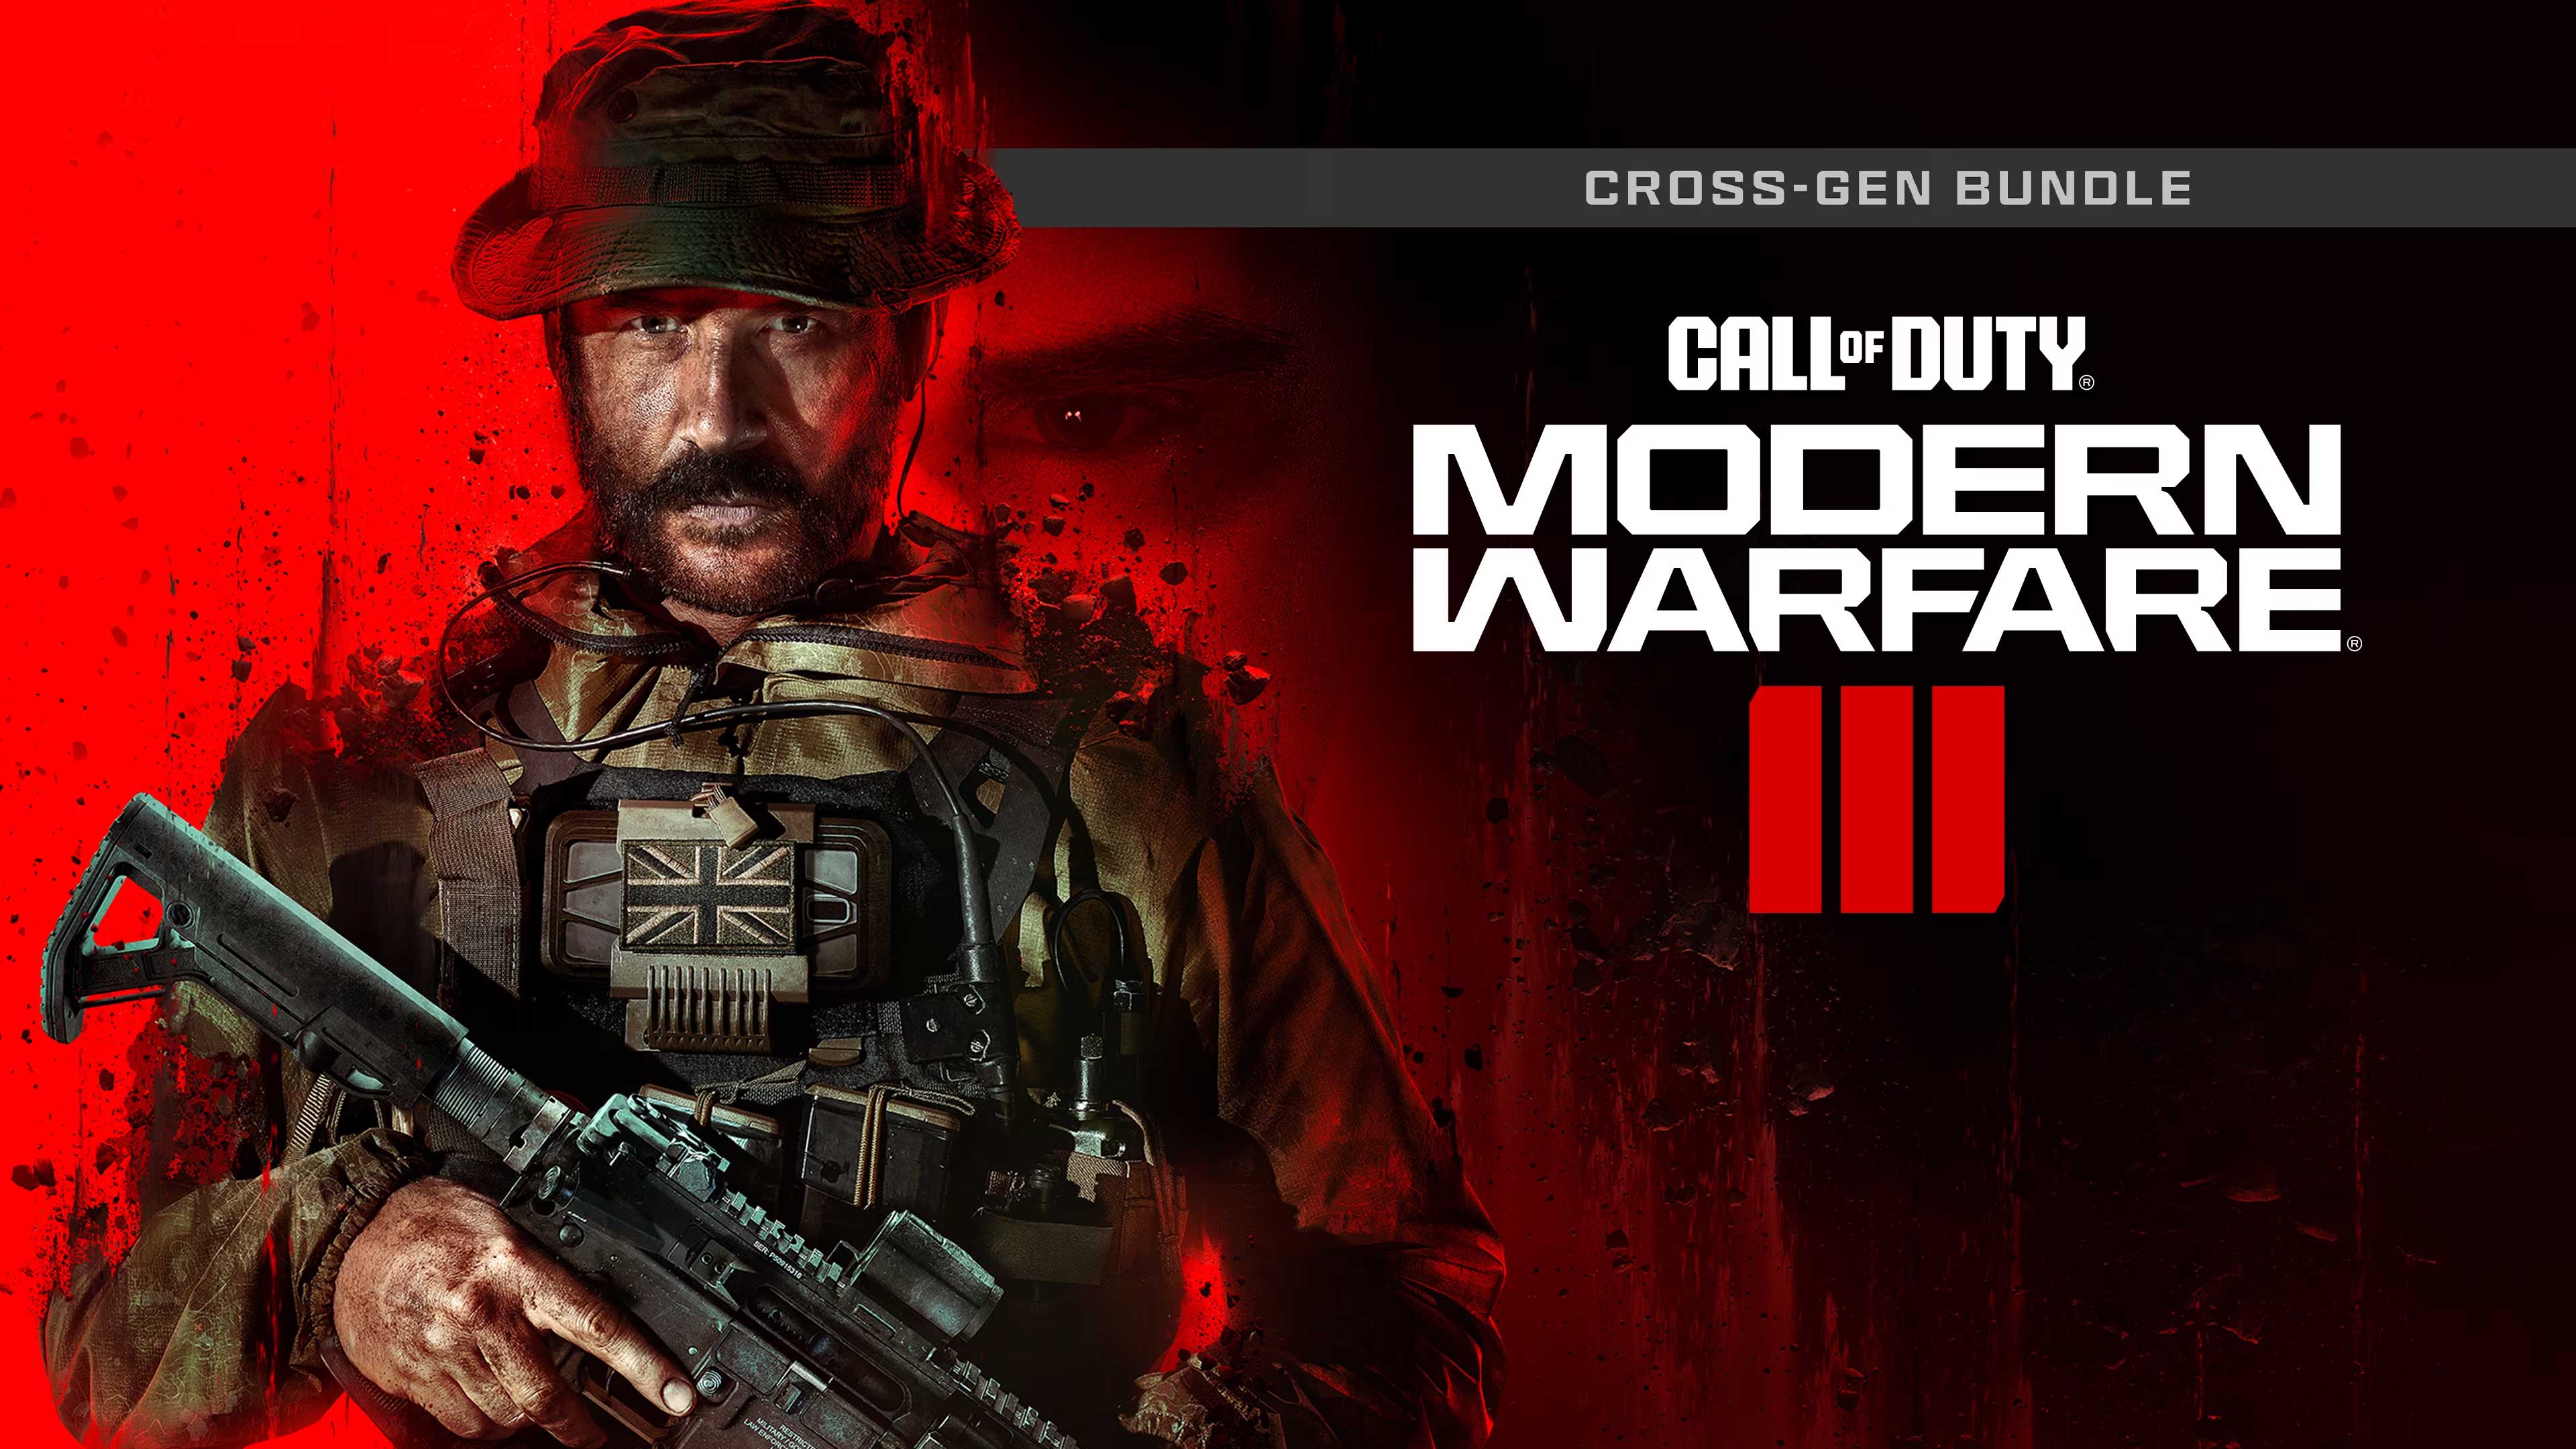 Call of Duty: Modern Warfare III - Cross-Gen Bundle, Gifting Xpress, giftingxpress.com